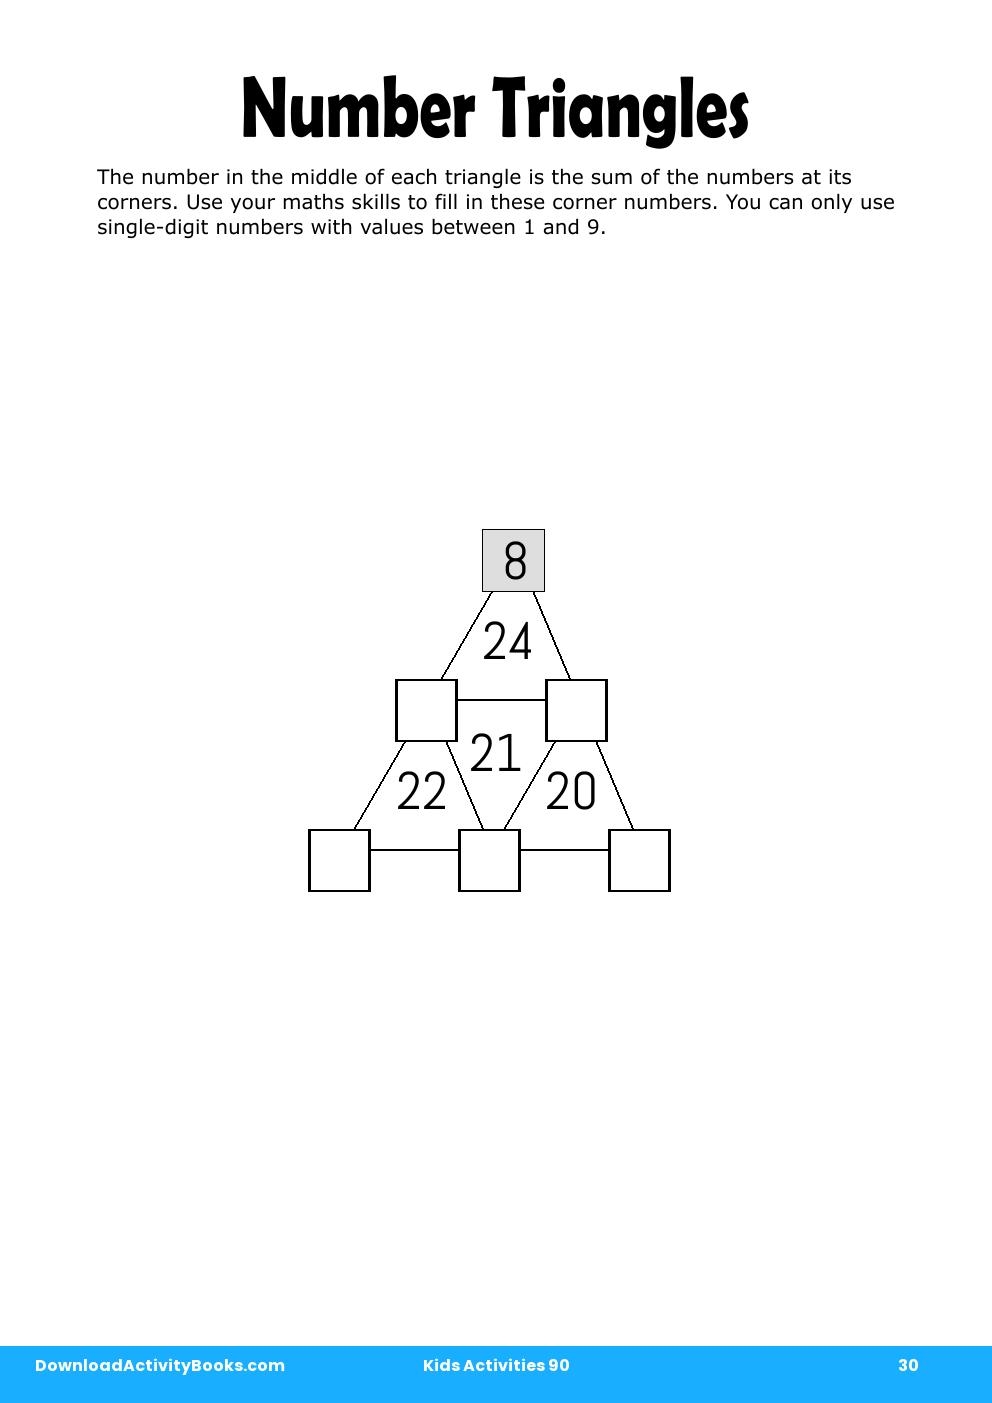 Number Triangles in Kids Activities 90